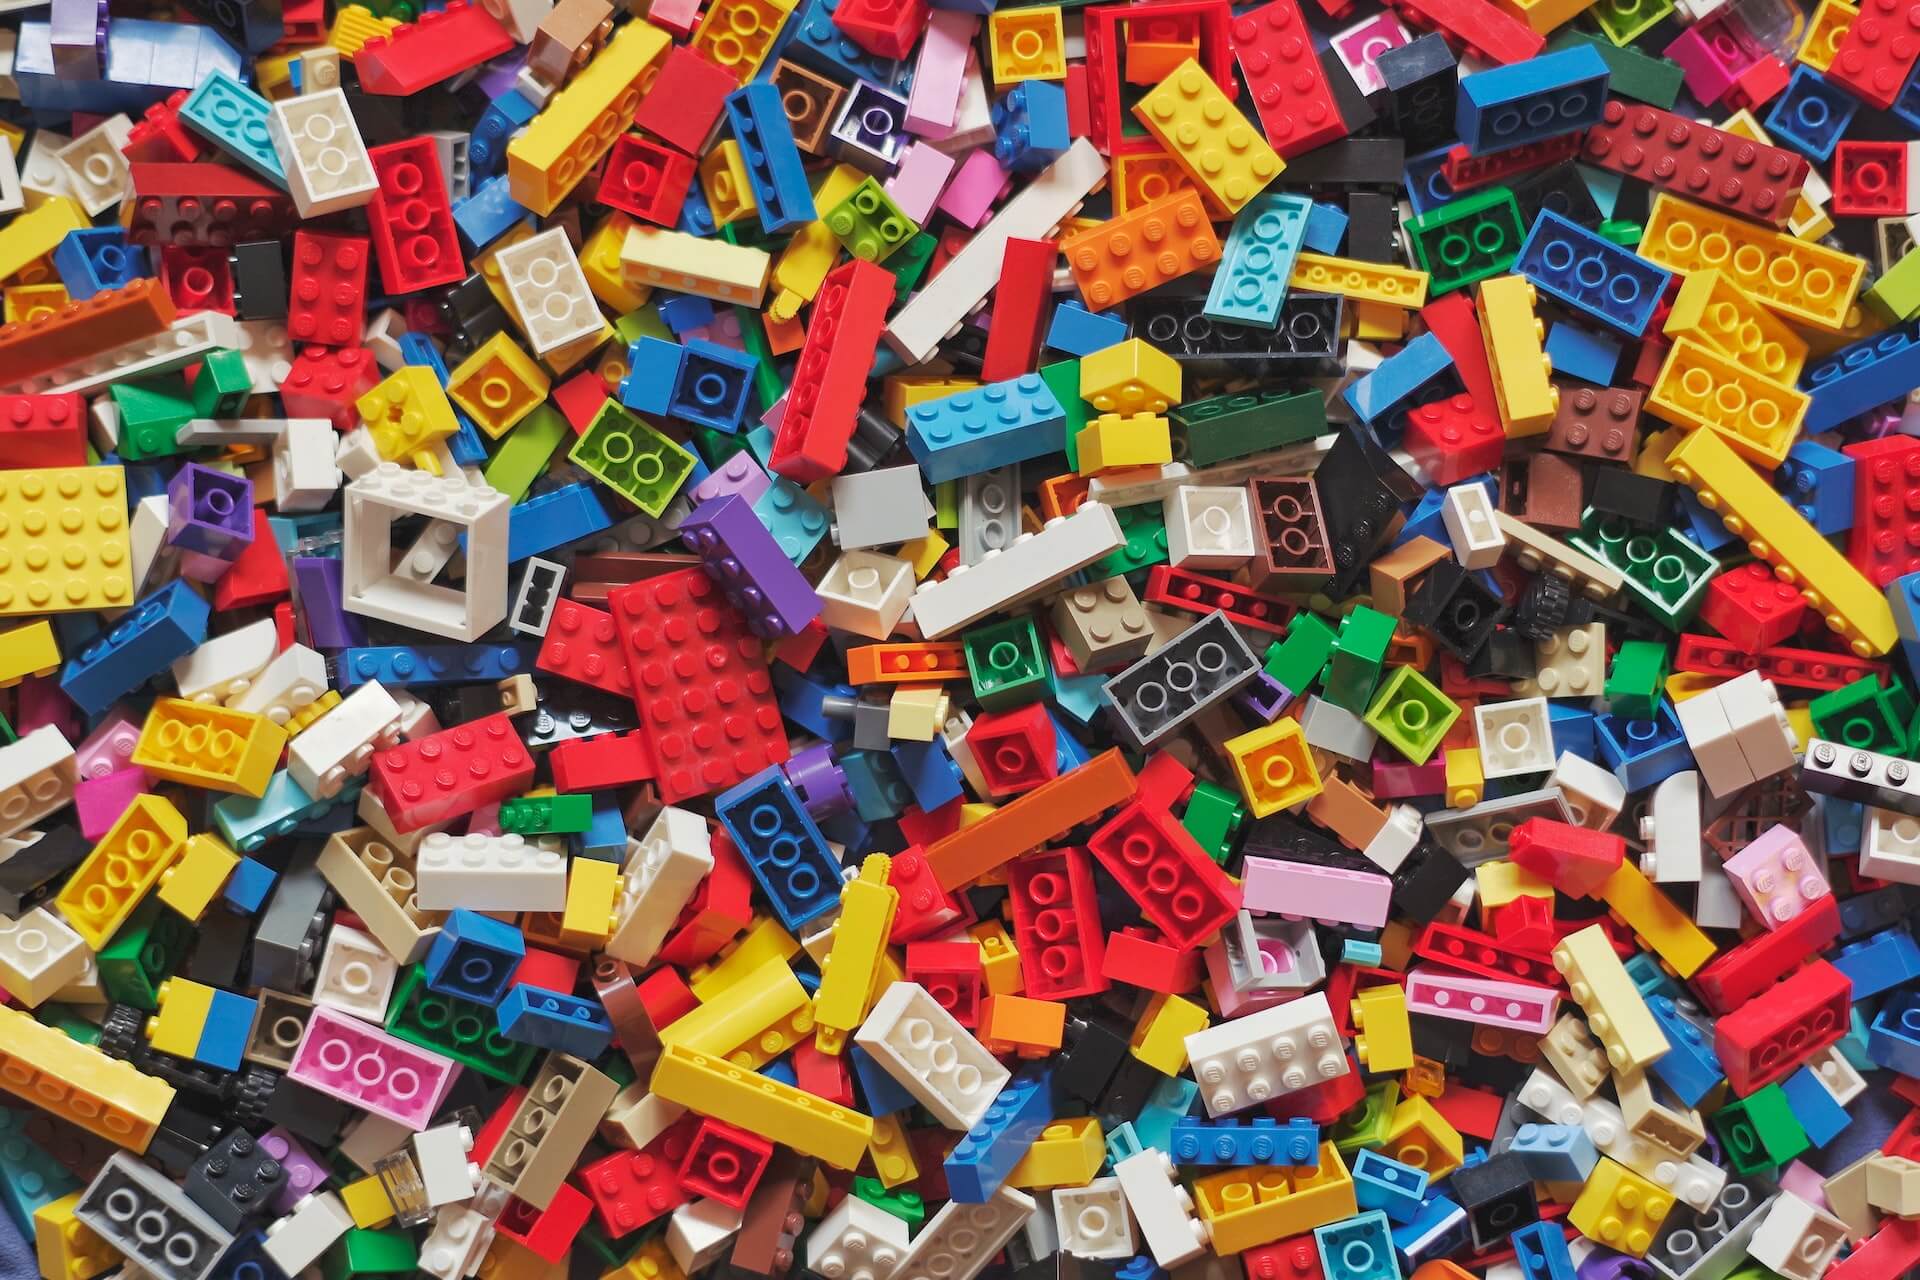 hundreds of lego bricks